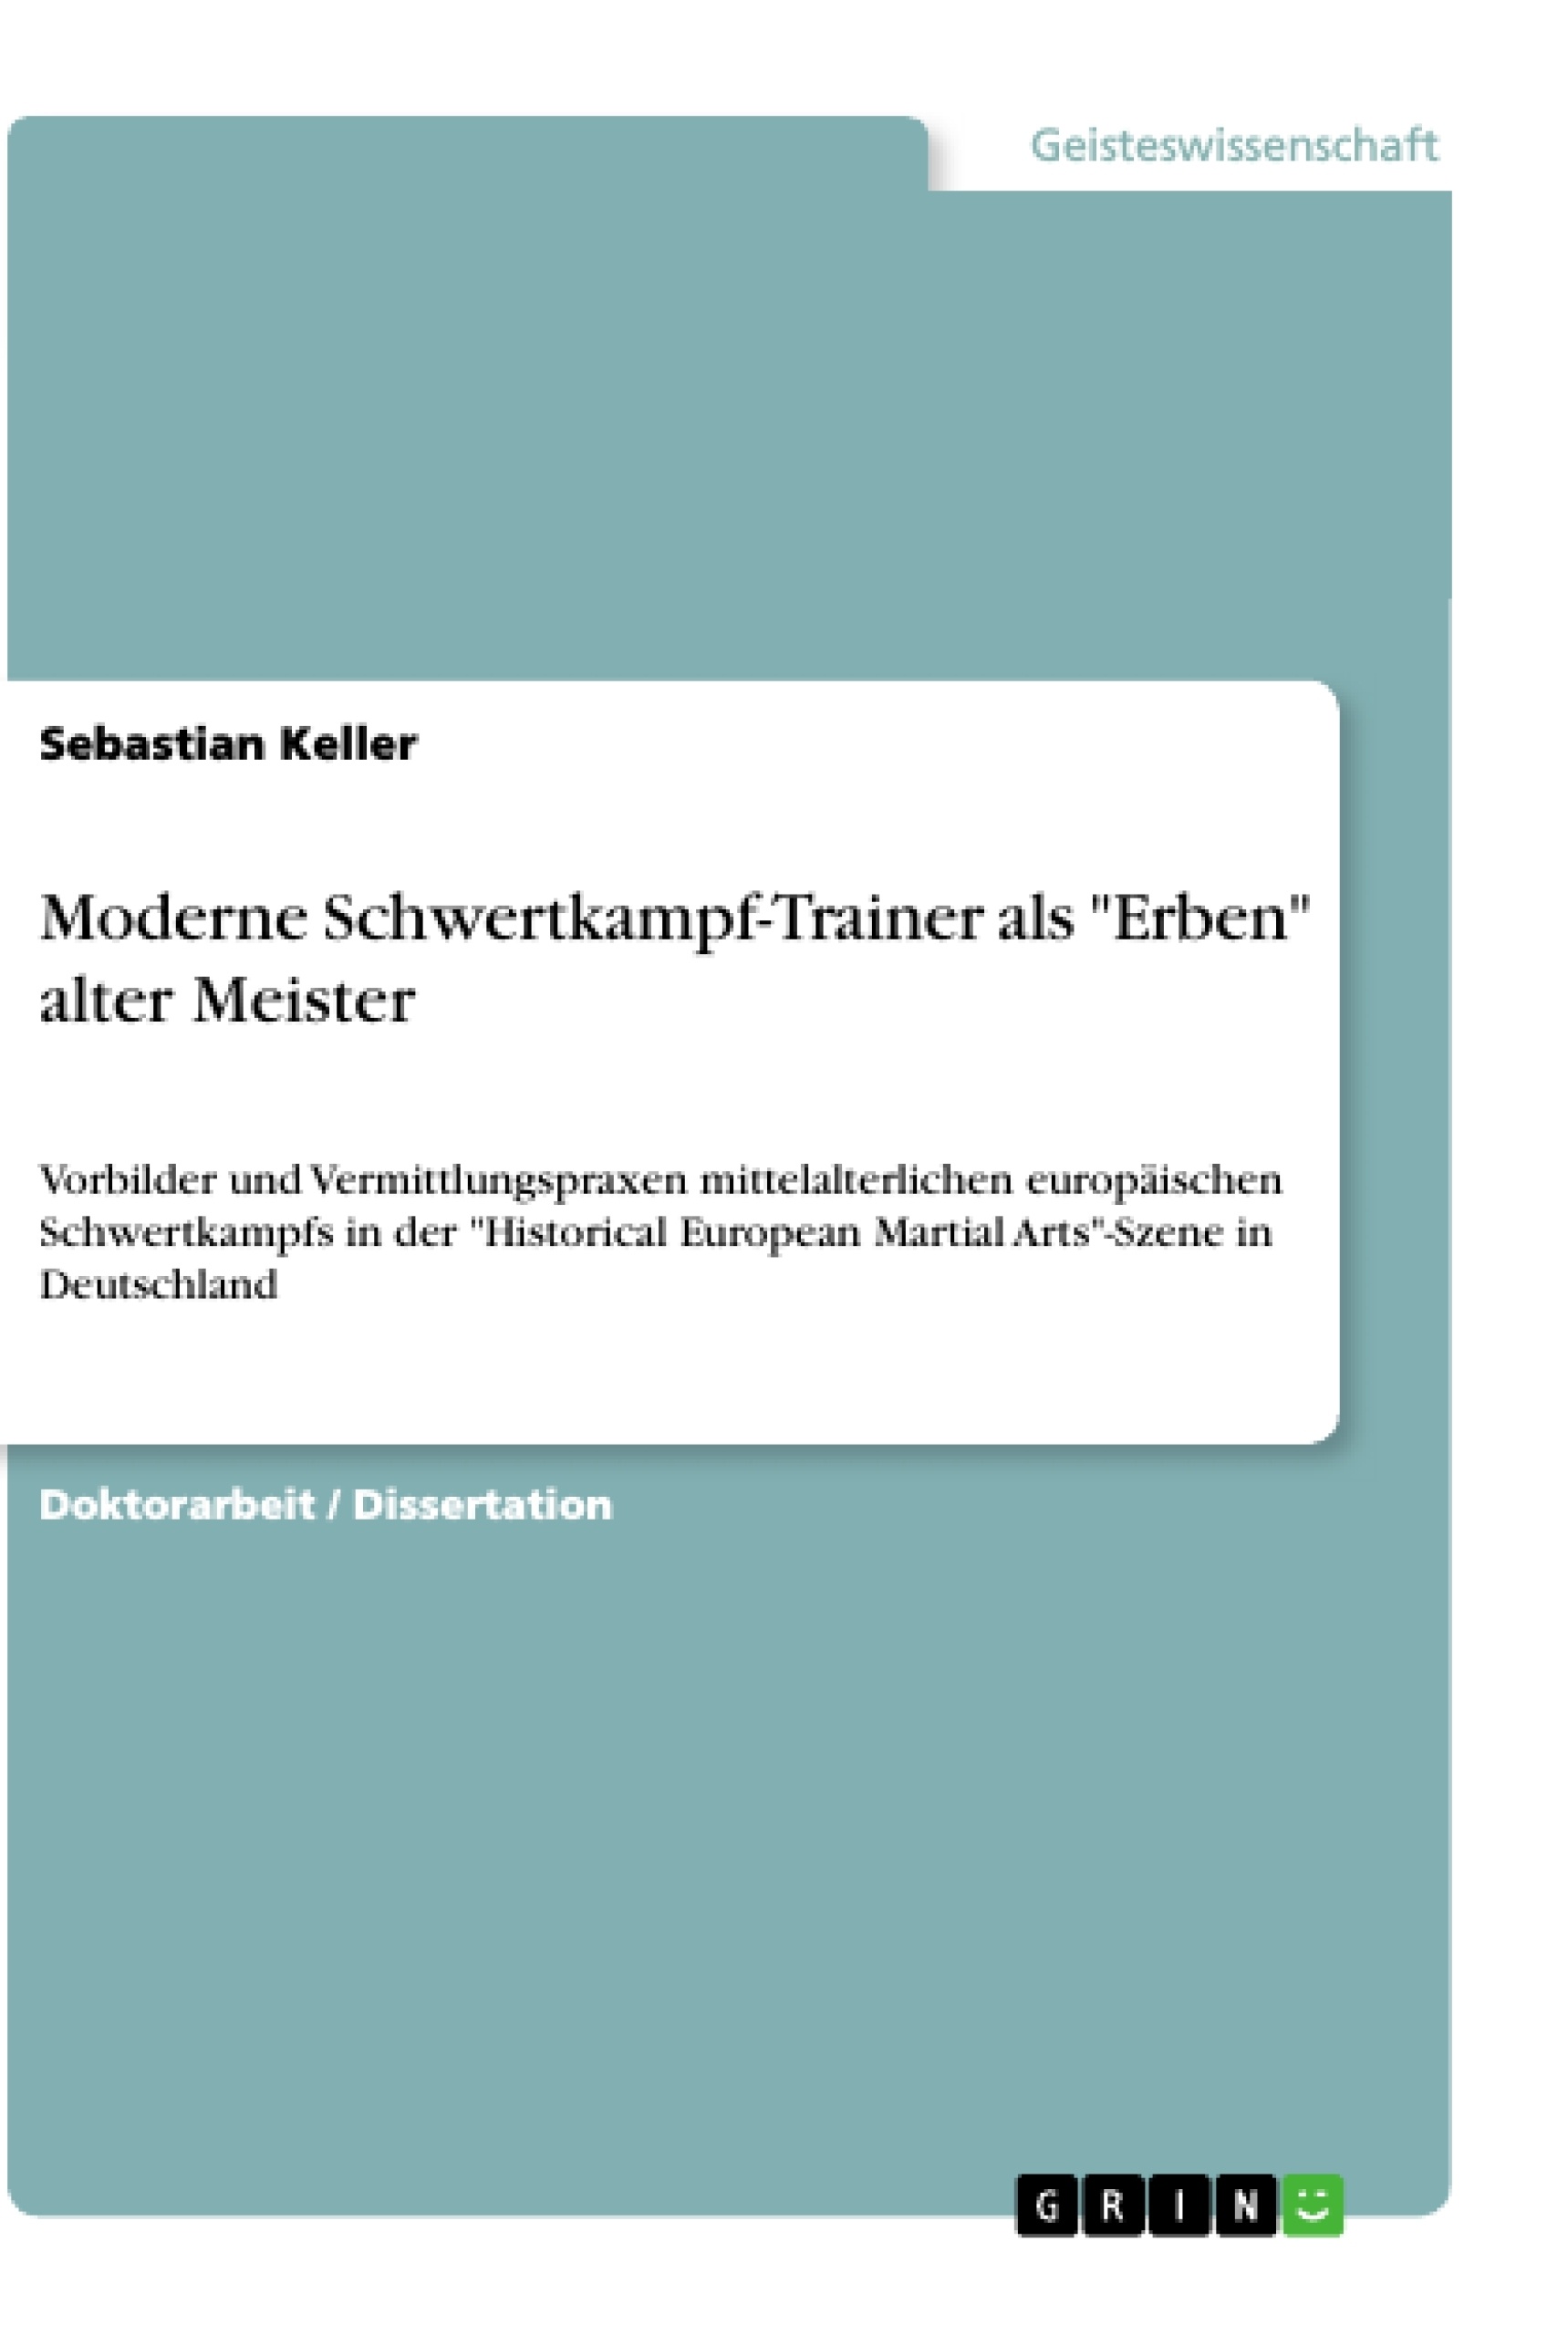 Title: Moderne Schwertkampf-Trainer als "Erben" alter Meister